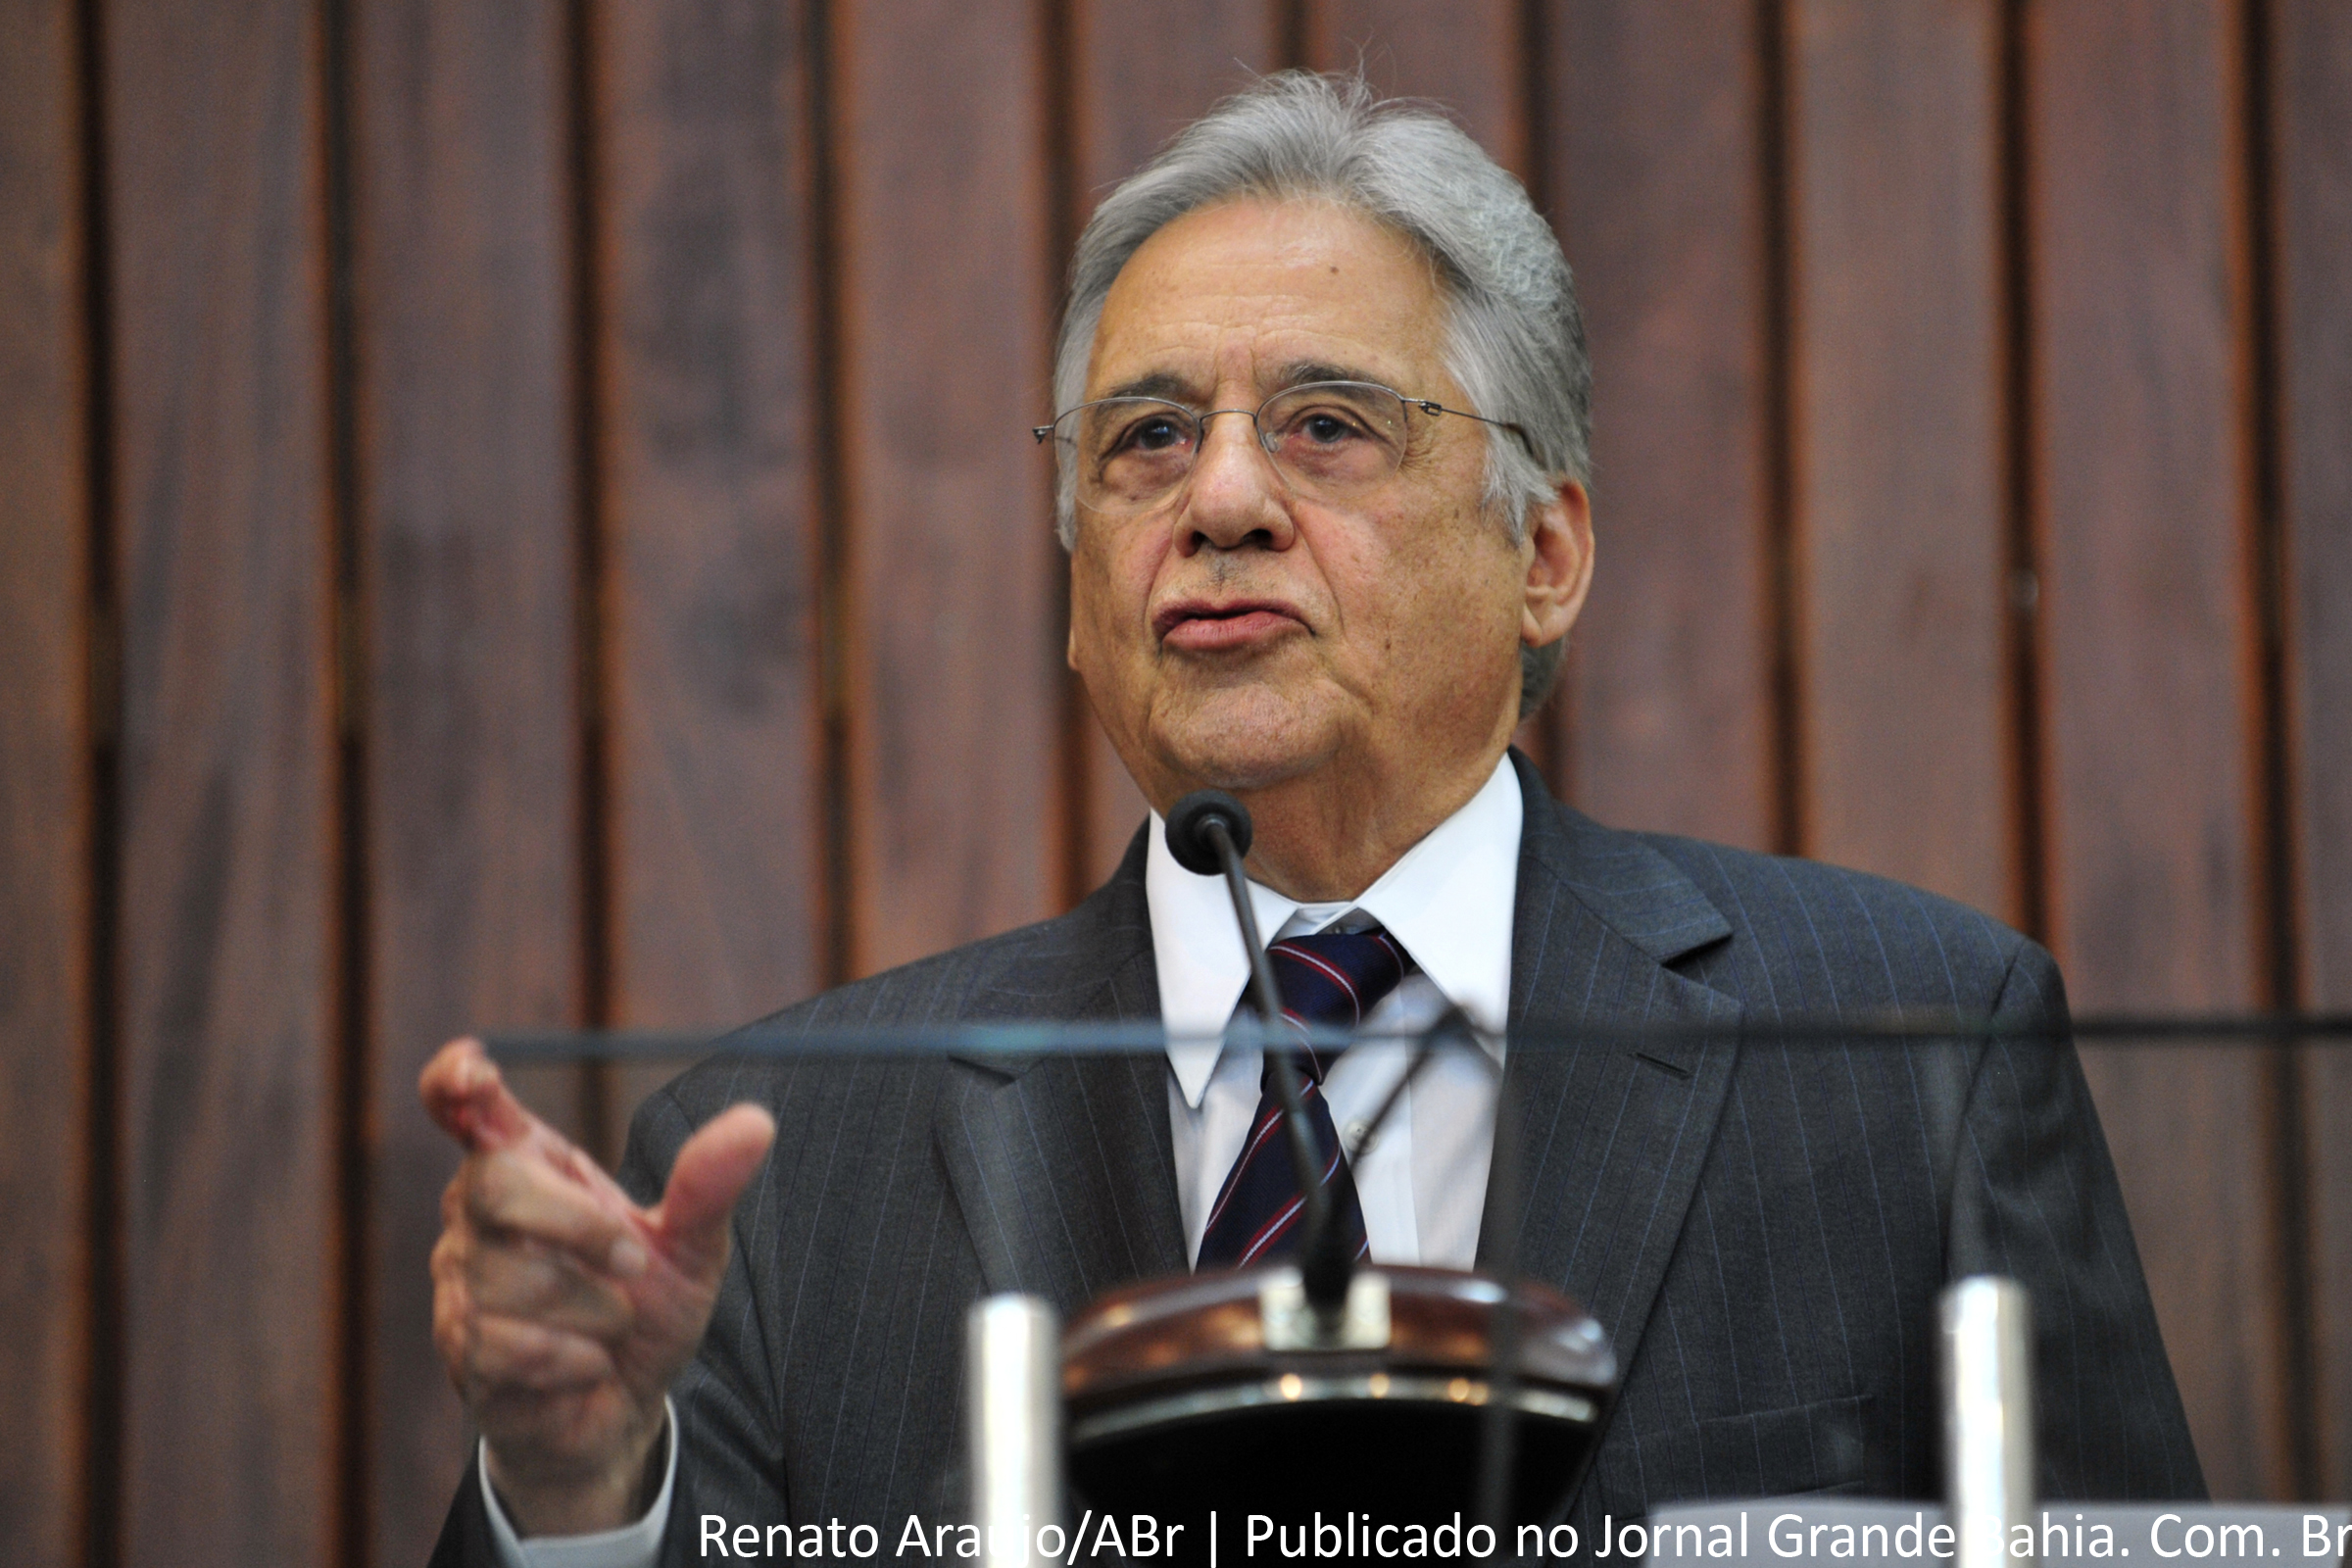 O ex-presidente Fernando Henrique Cardoso foi escolhido pela Biblioteca do Congresso dos Estados Unidos para receber o Prêmio John W. Kluge.